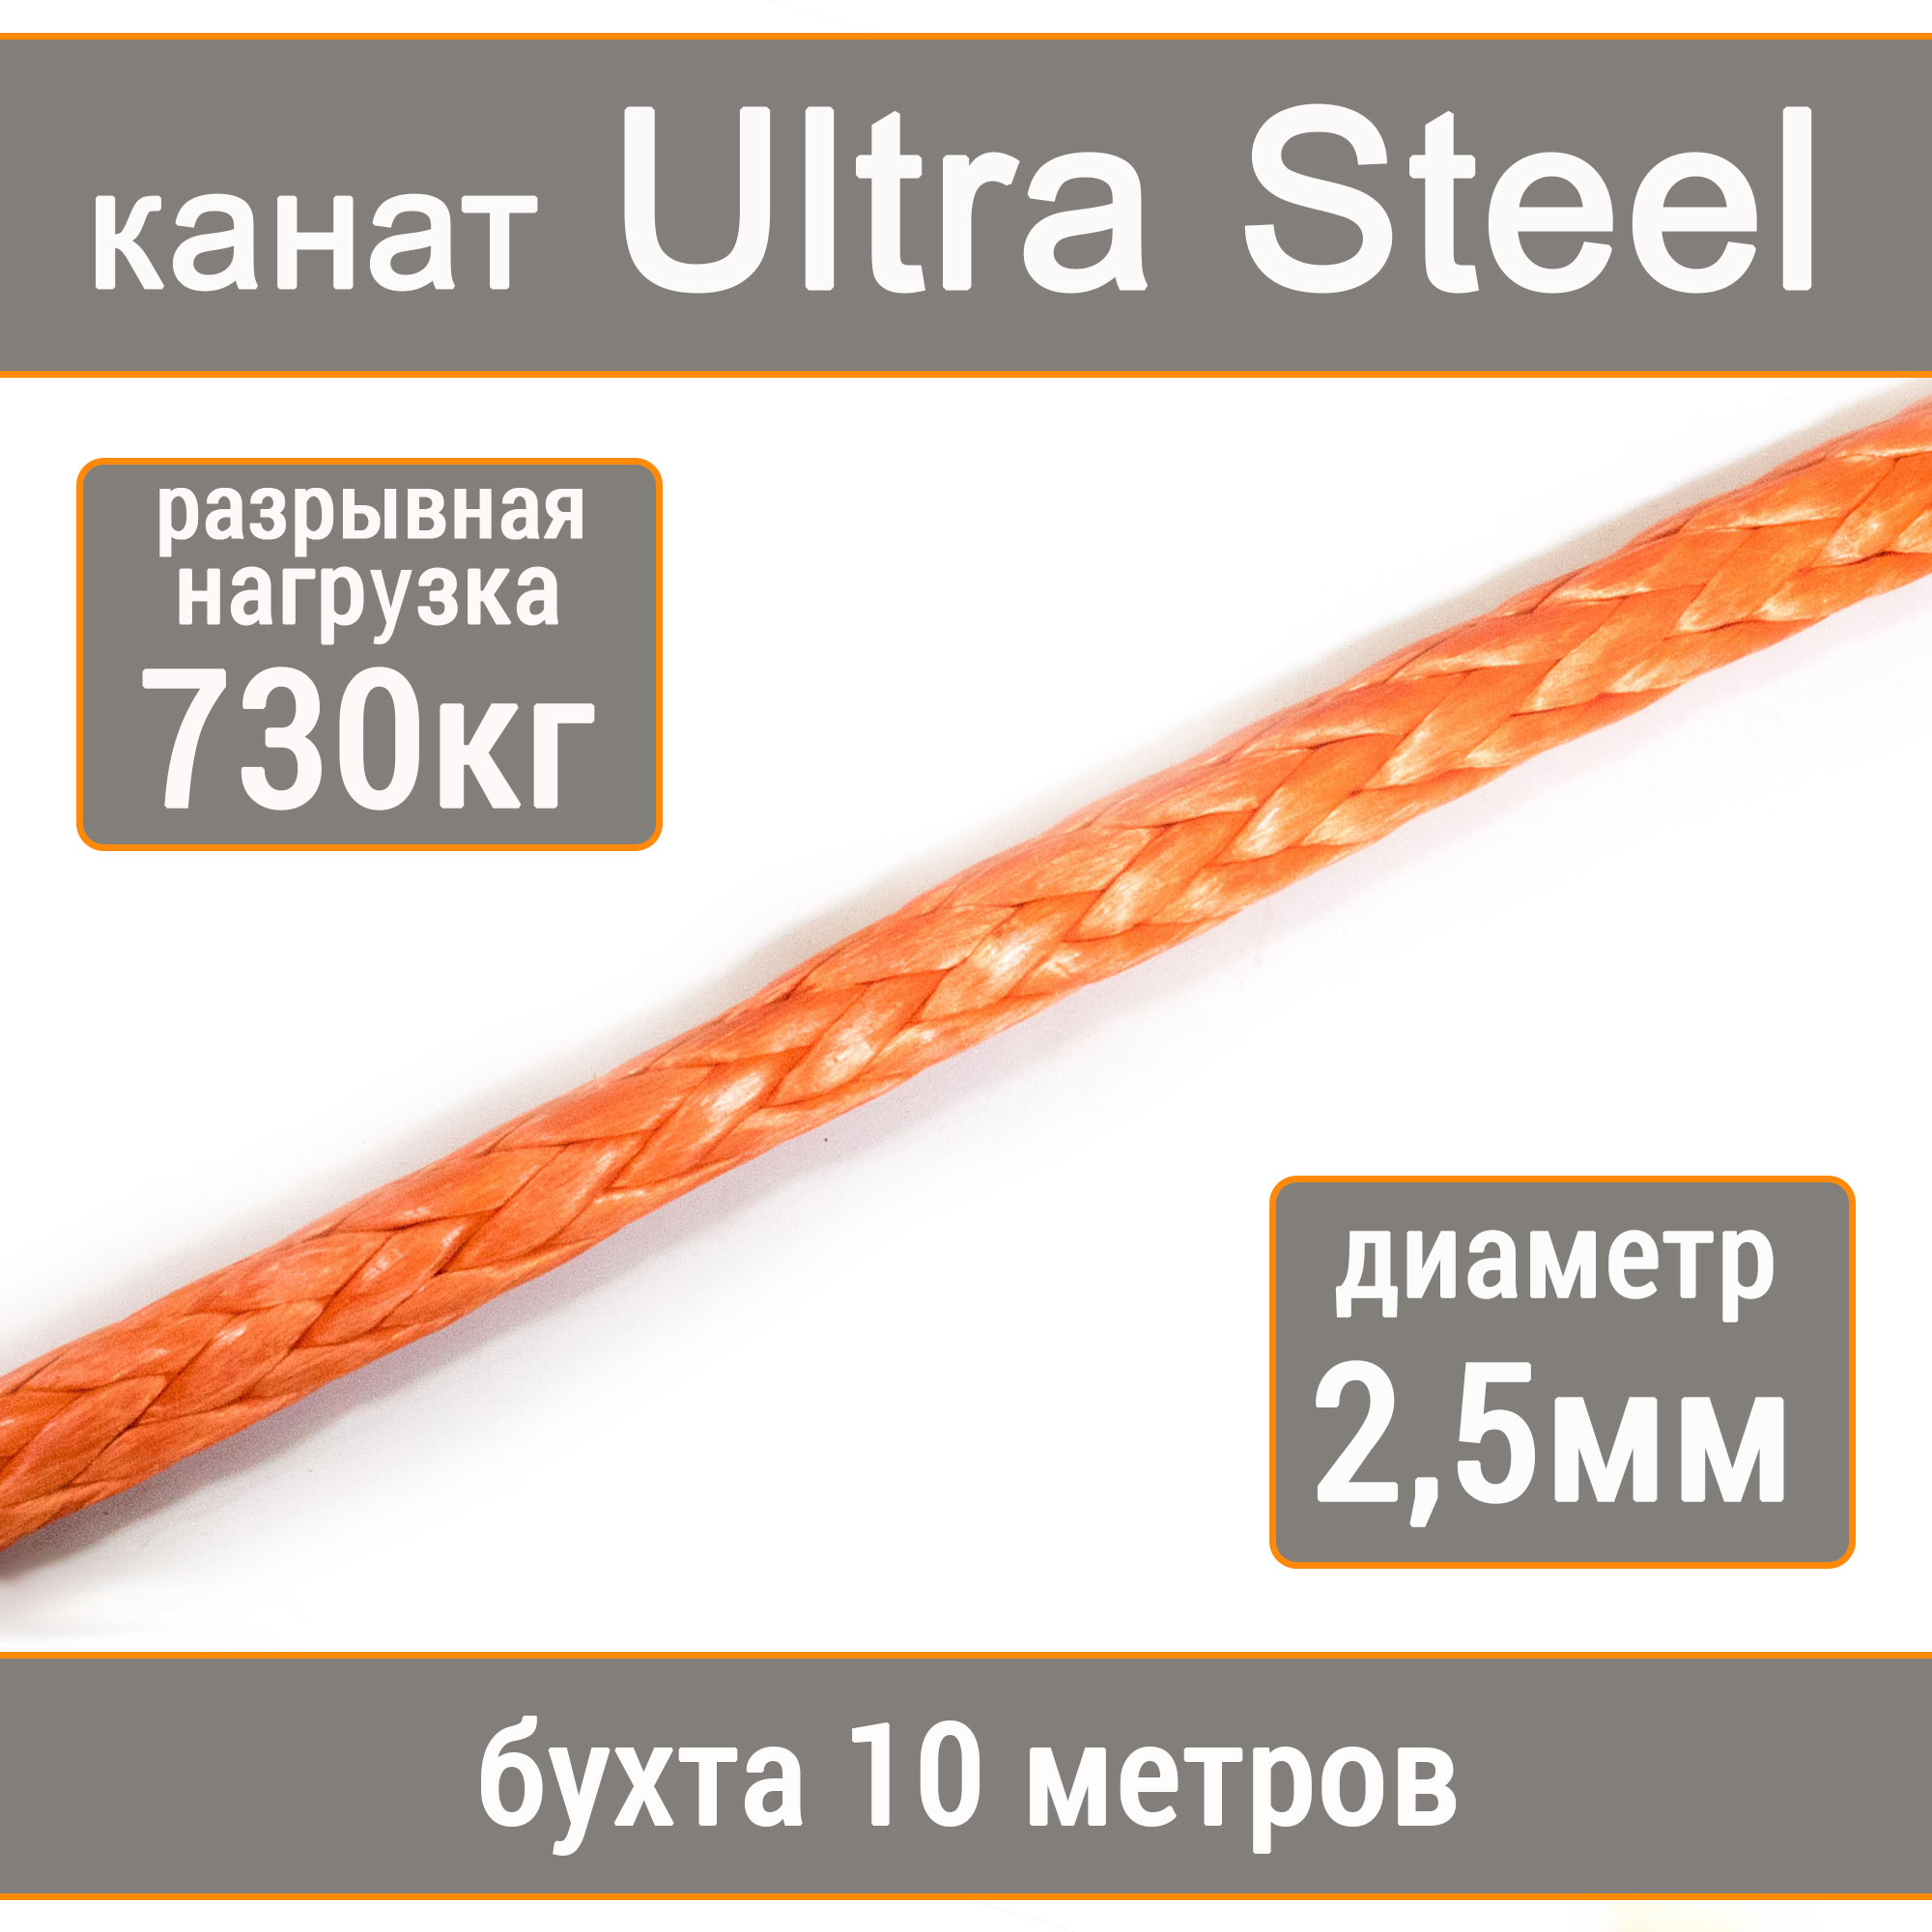 Высокопрочный синтетический канат UTX Ultra Steel 2,5мм р.н.730кг, 007654321-1025